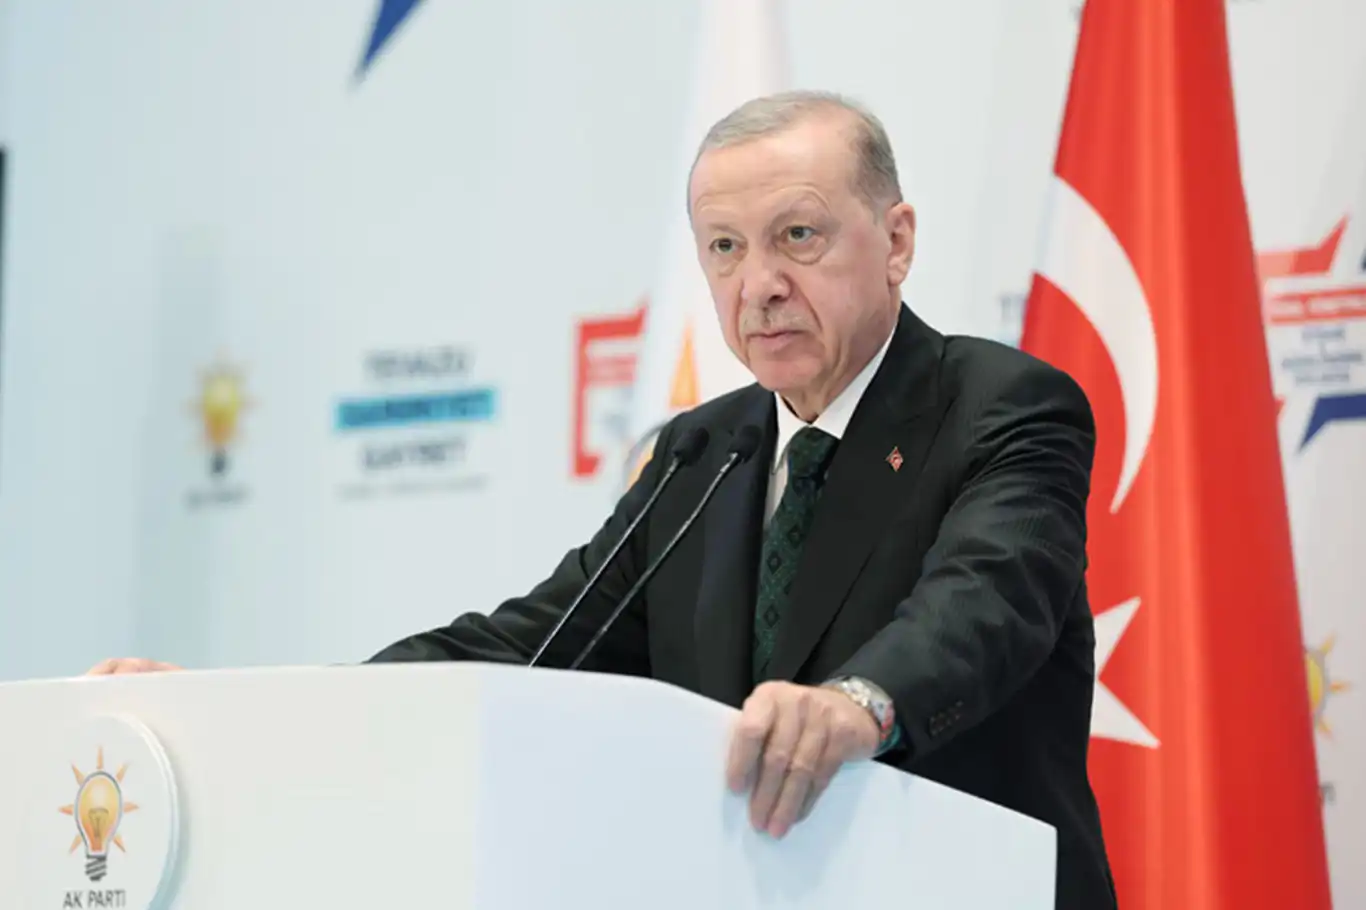 Cumhurbaşkanı Erdoğan'dan Kayseri'deki olaylara ilişkin açıklama